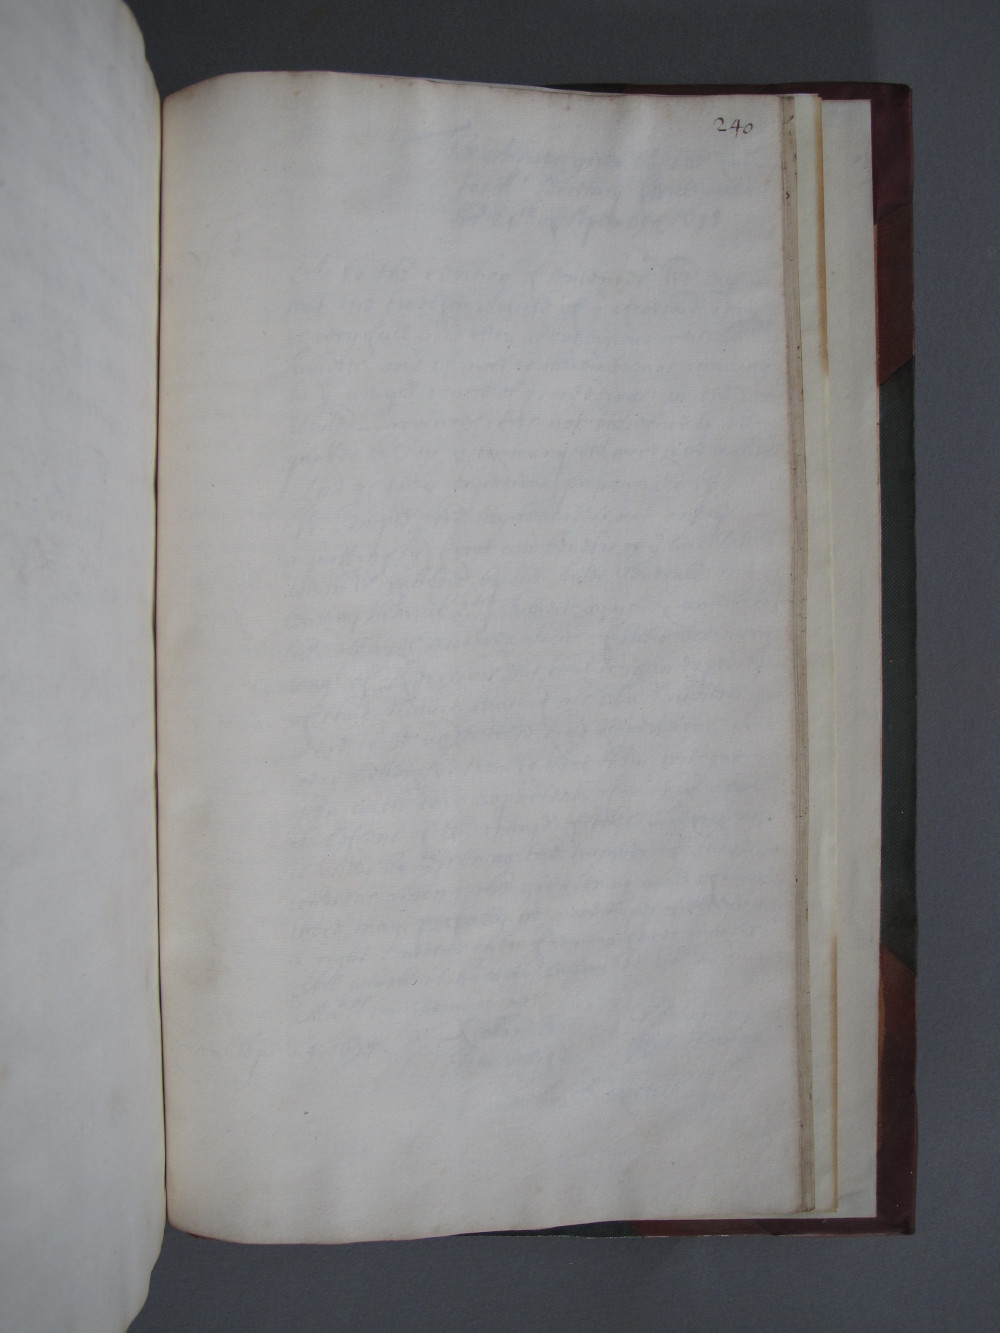 Folio 240 recto